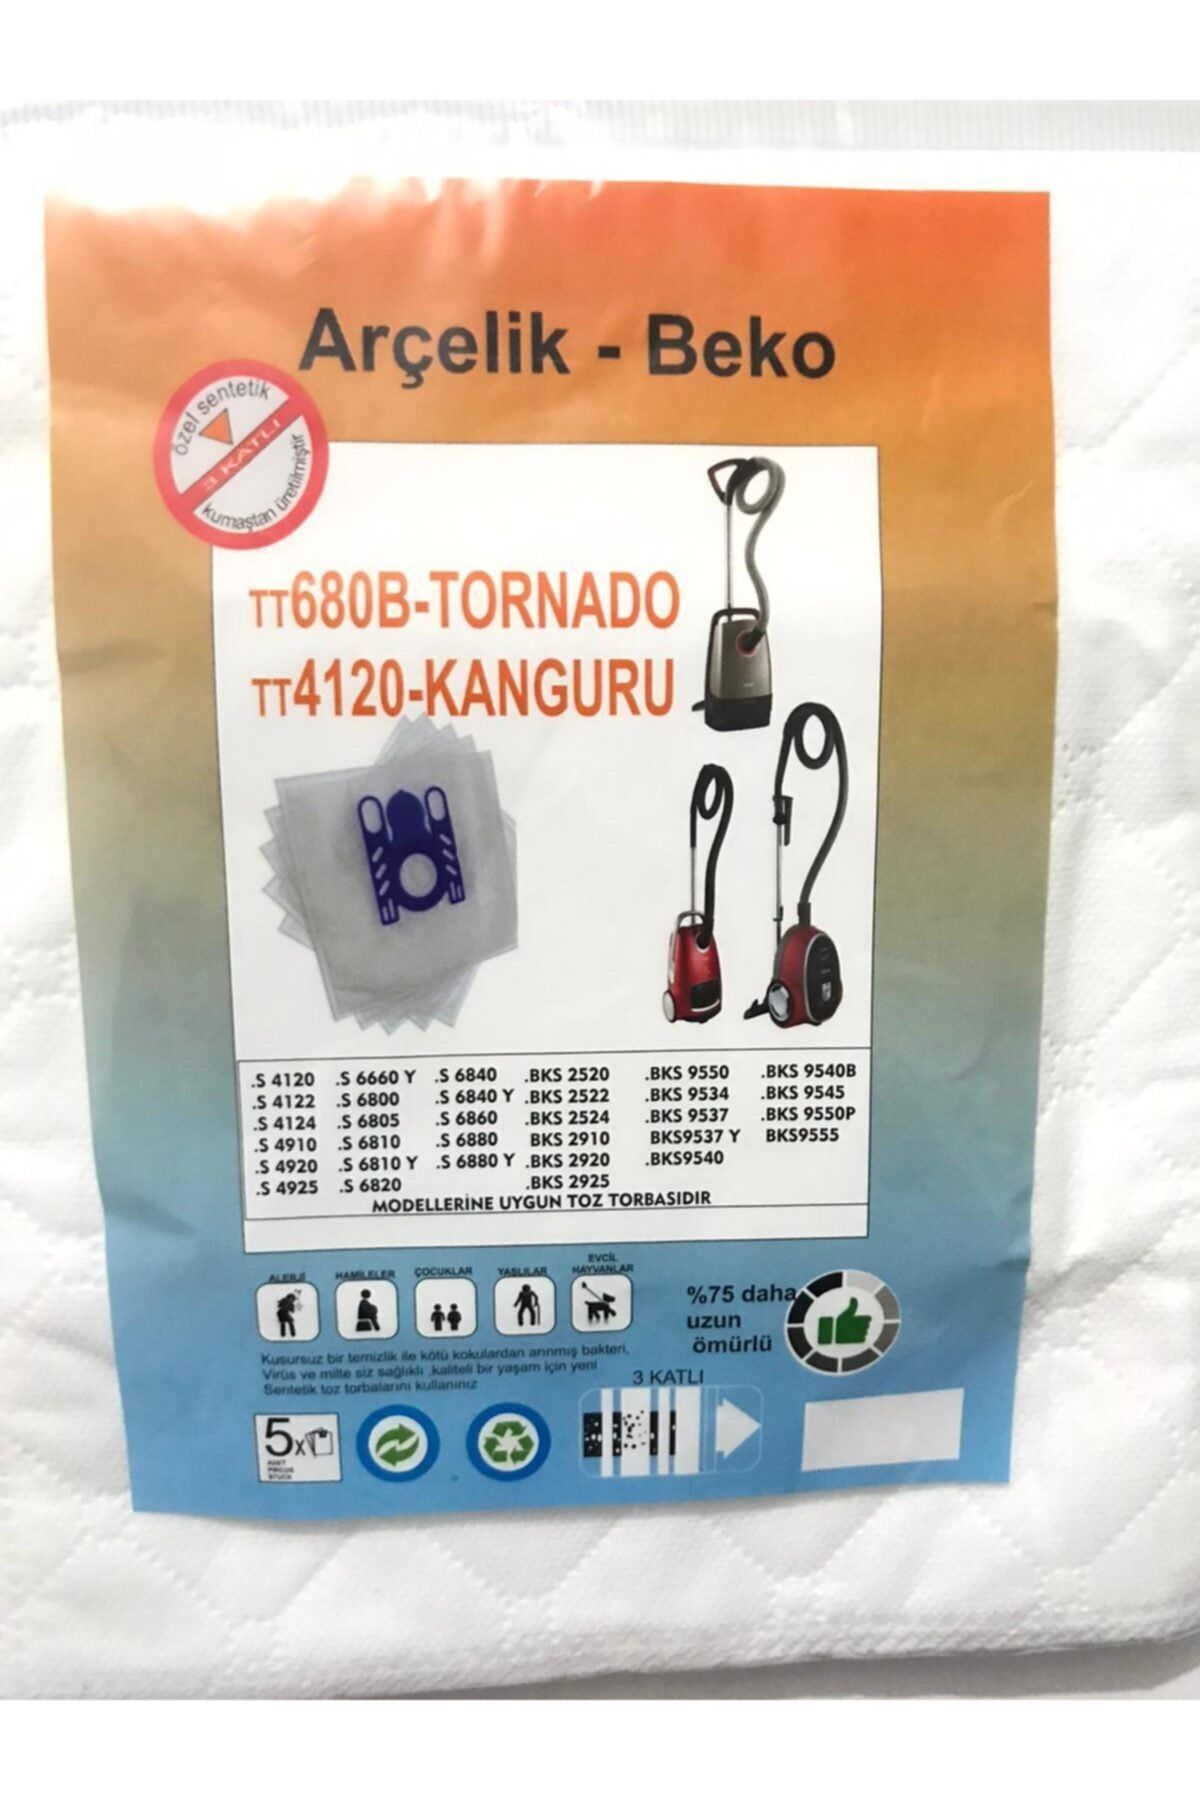 Beko Arçelik - 5 Adet Antimikrobiyal Toz Torbası Tornado-kanguru